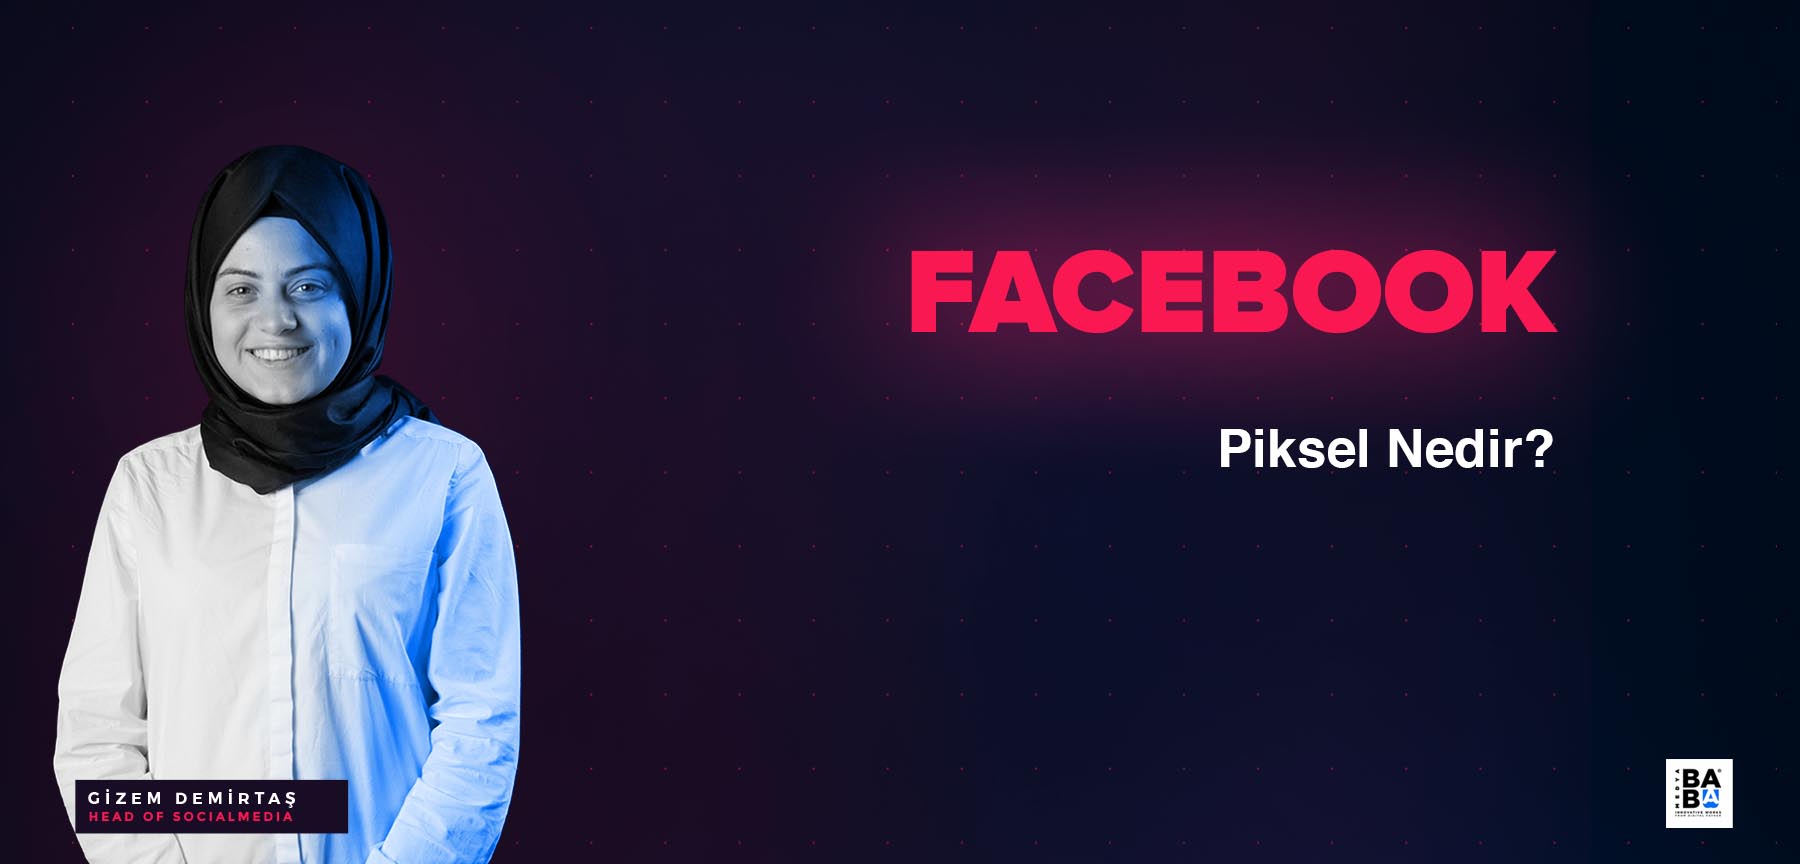 Facebook piksel nedir?